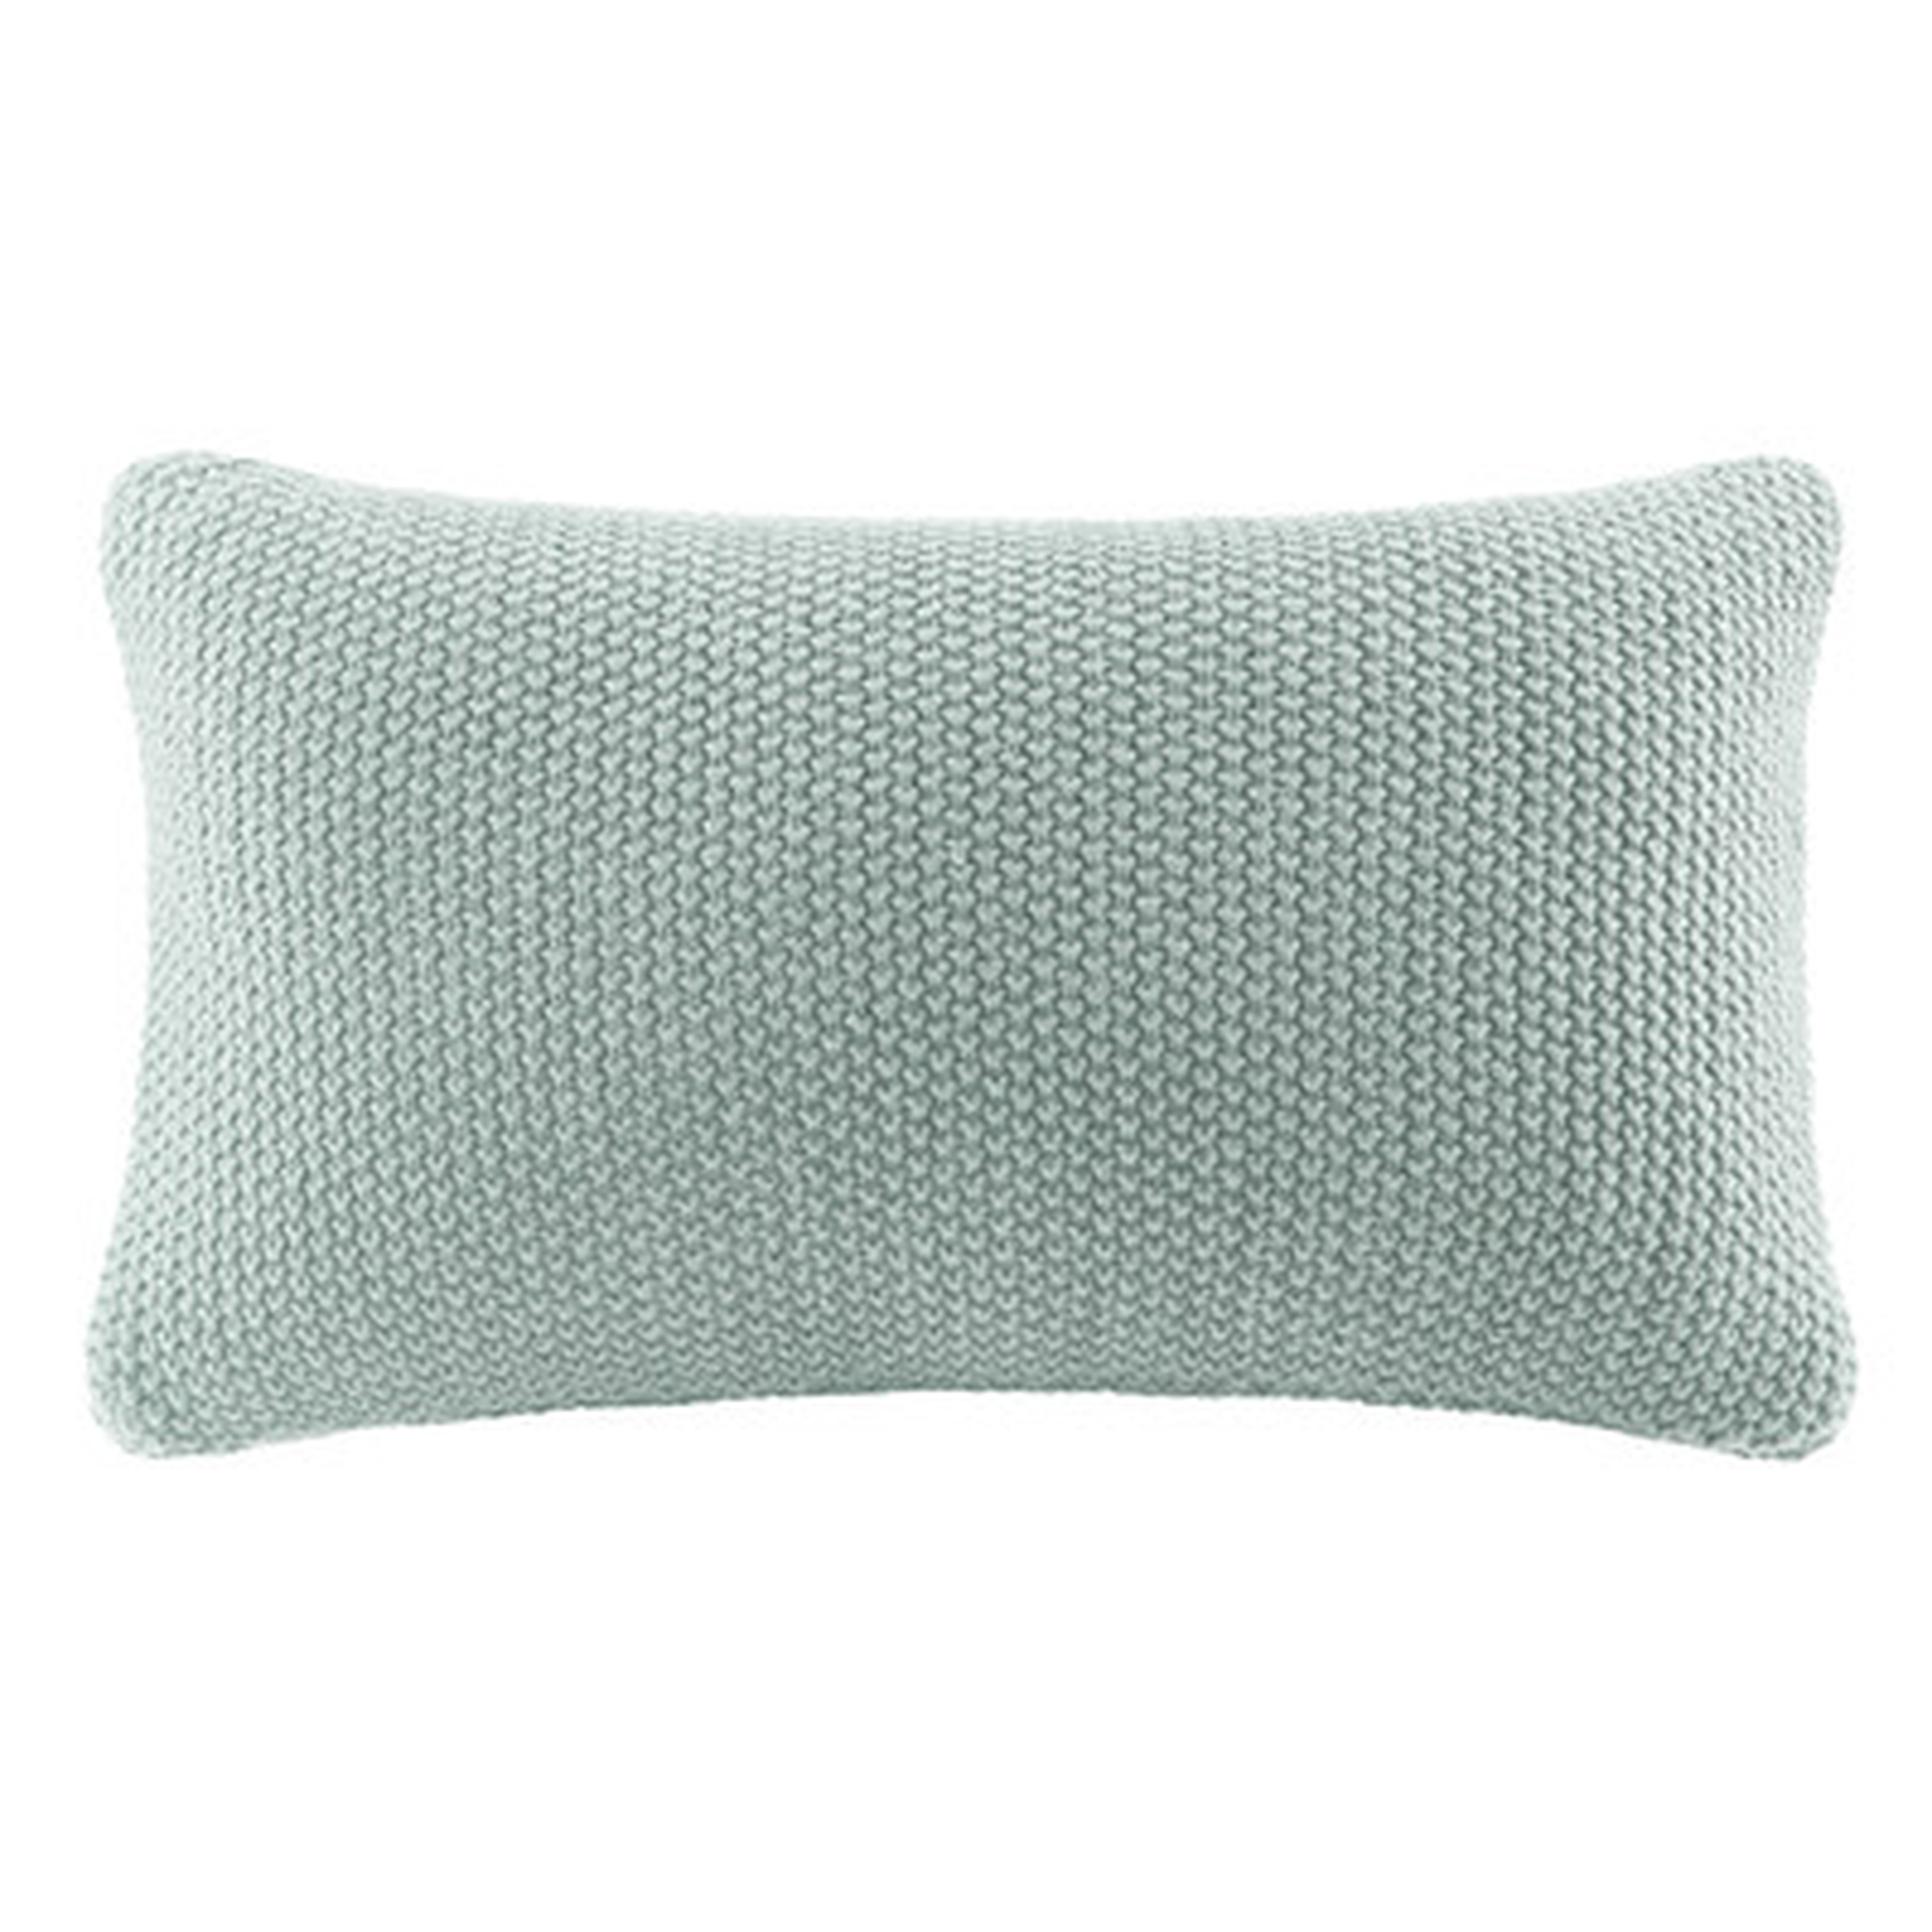 Elliott Knit Lumbar Pillow Cover - Birch Lane